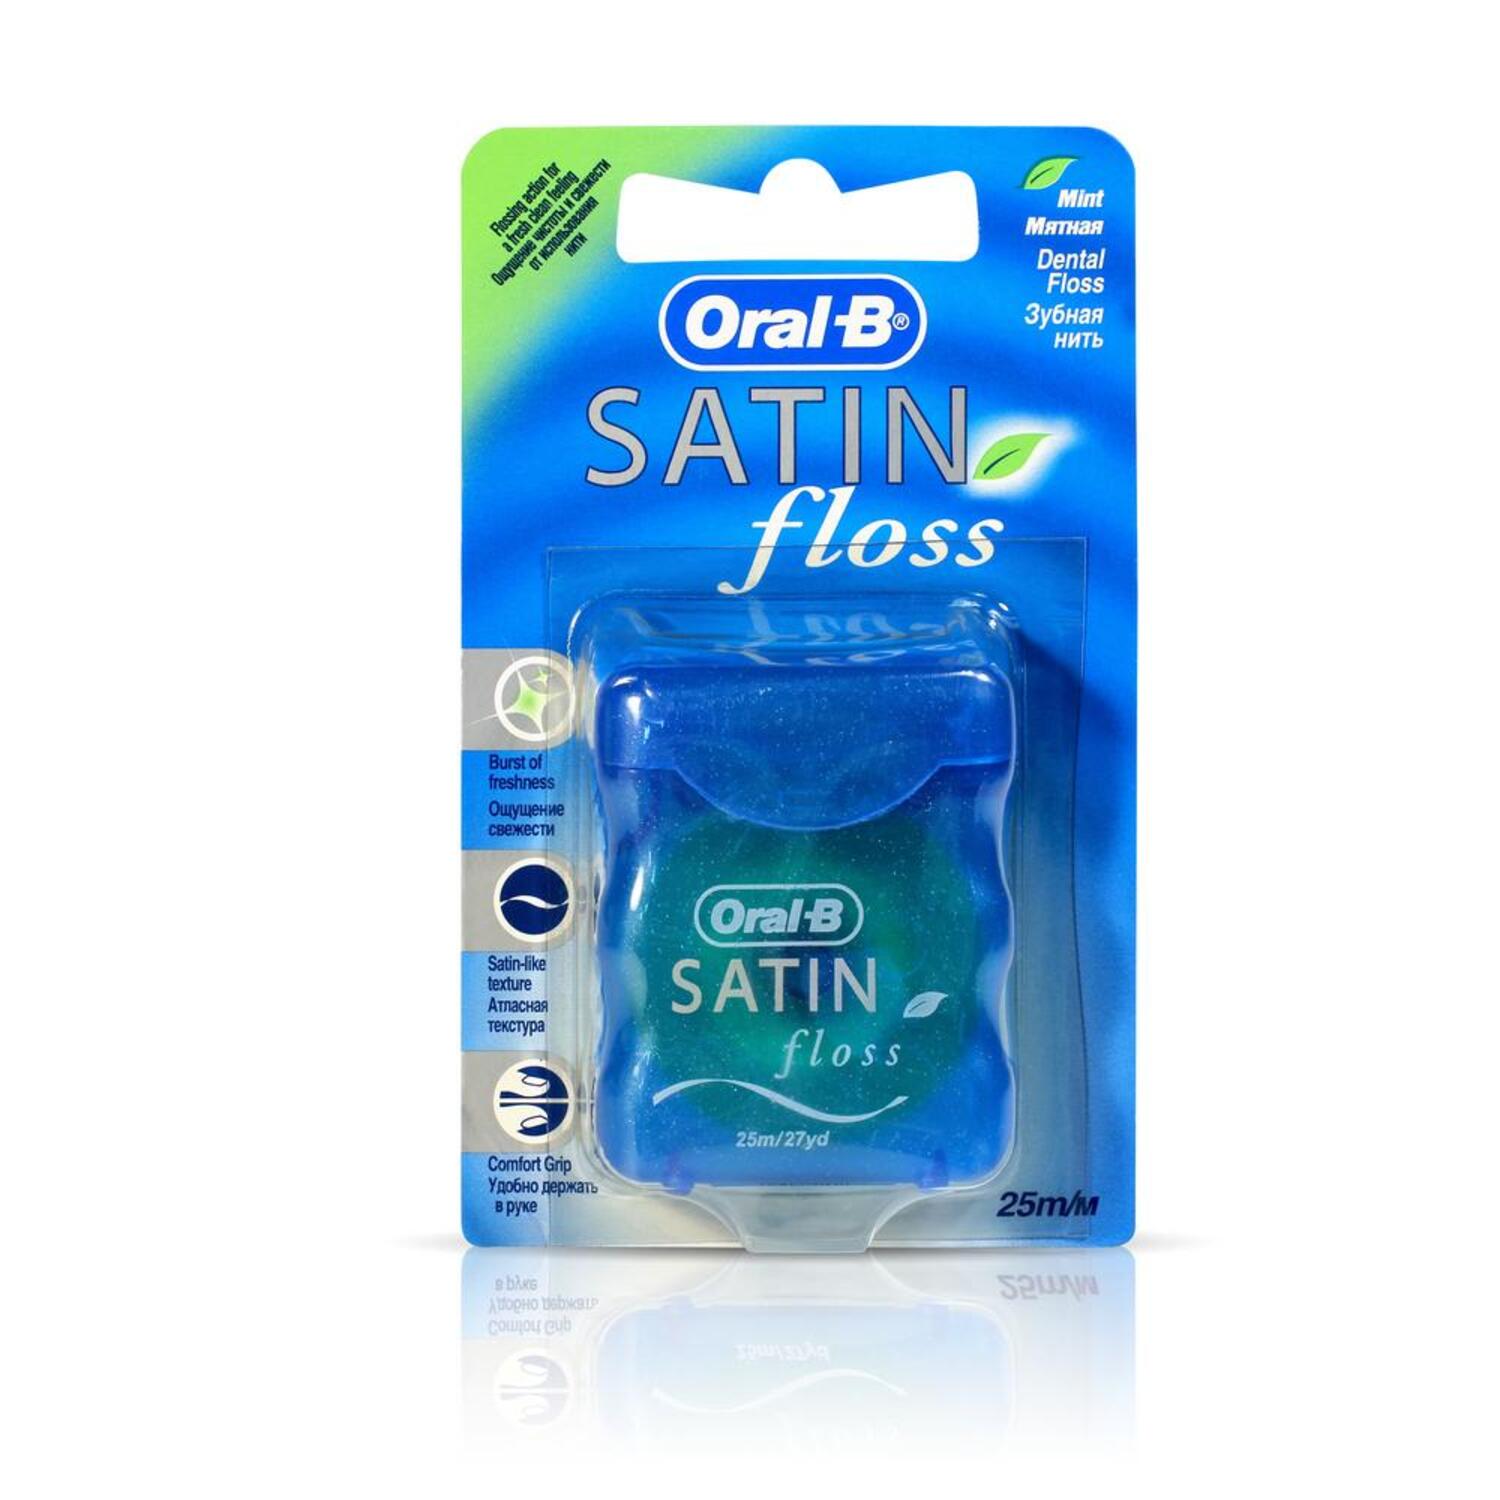 Купить Орал-Б нить зубная Сатин 25м, Oral-B